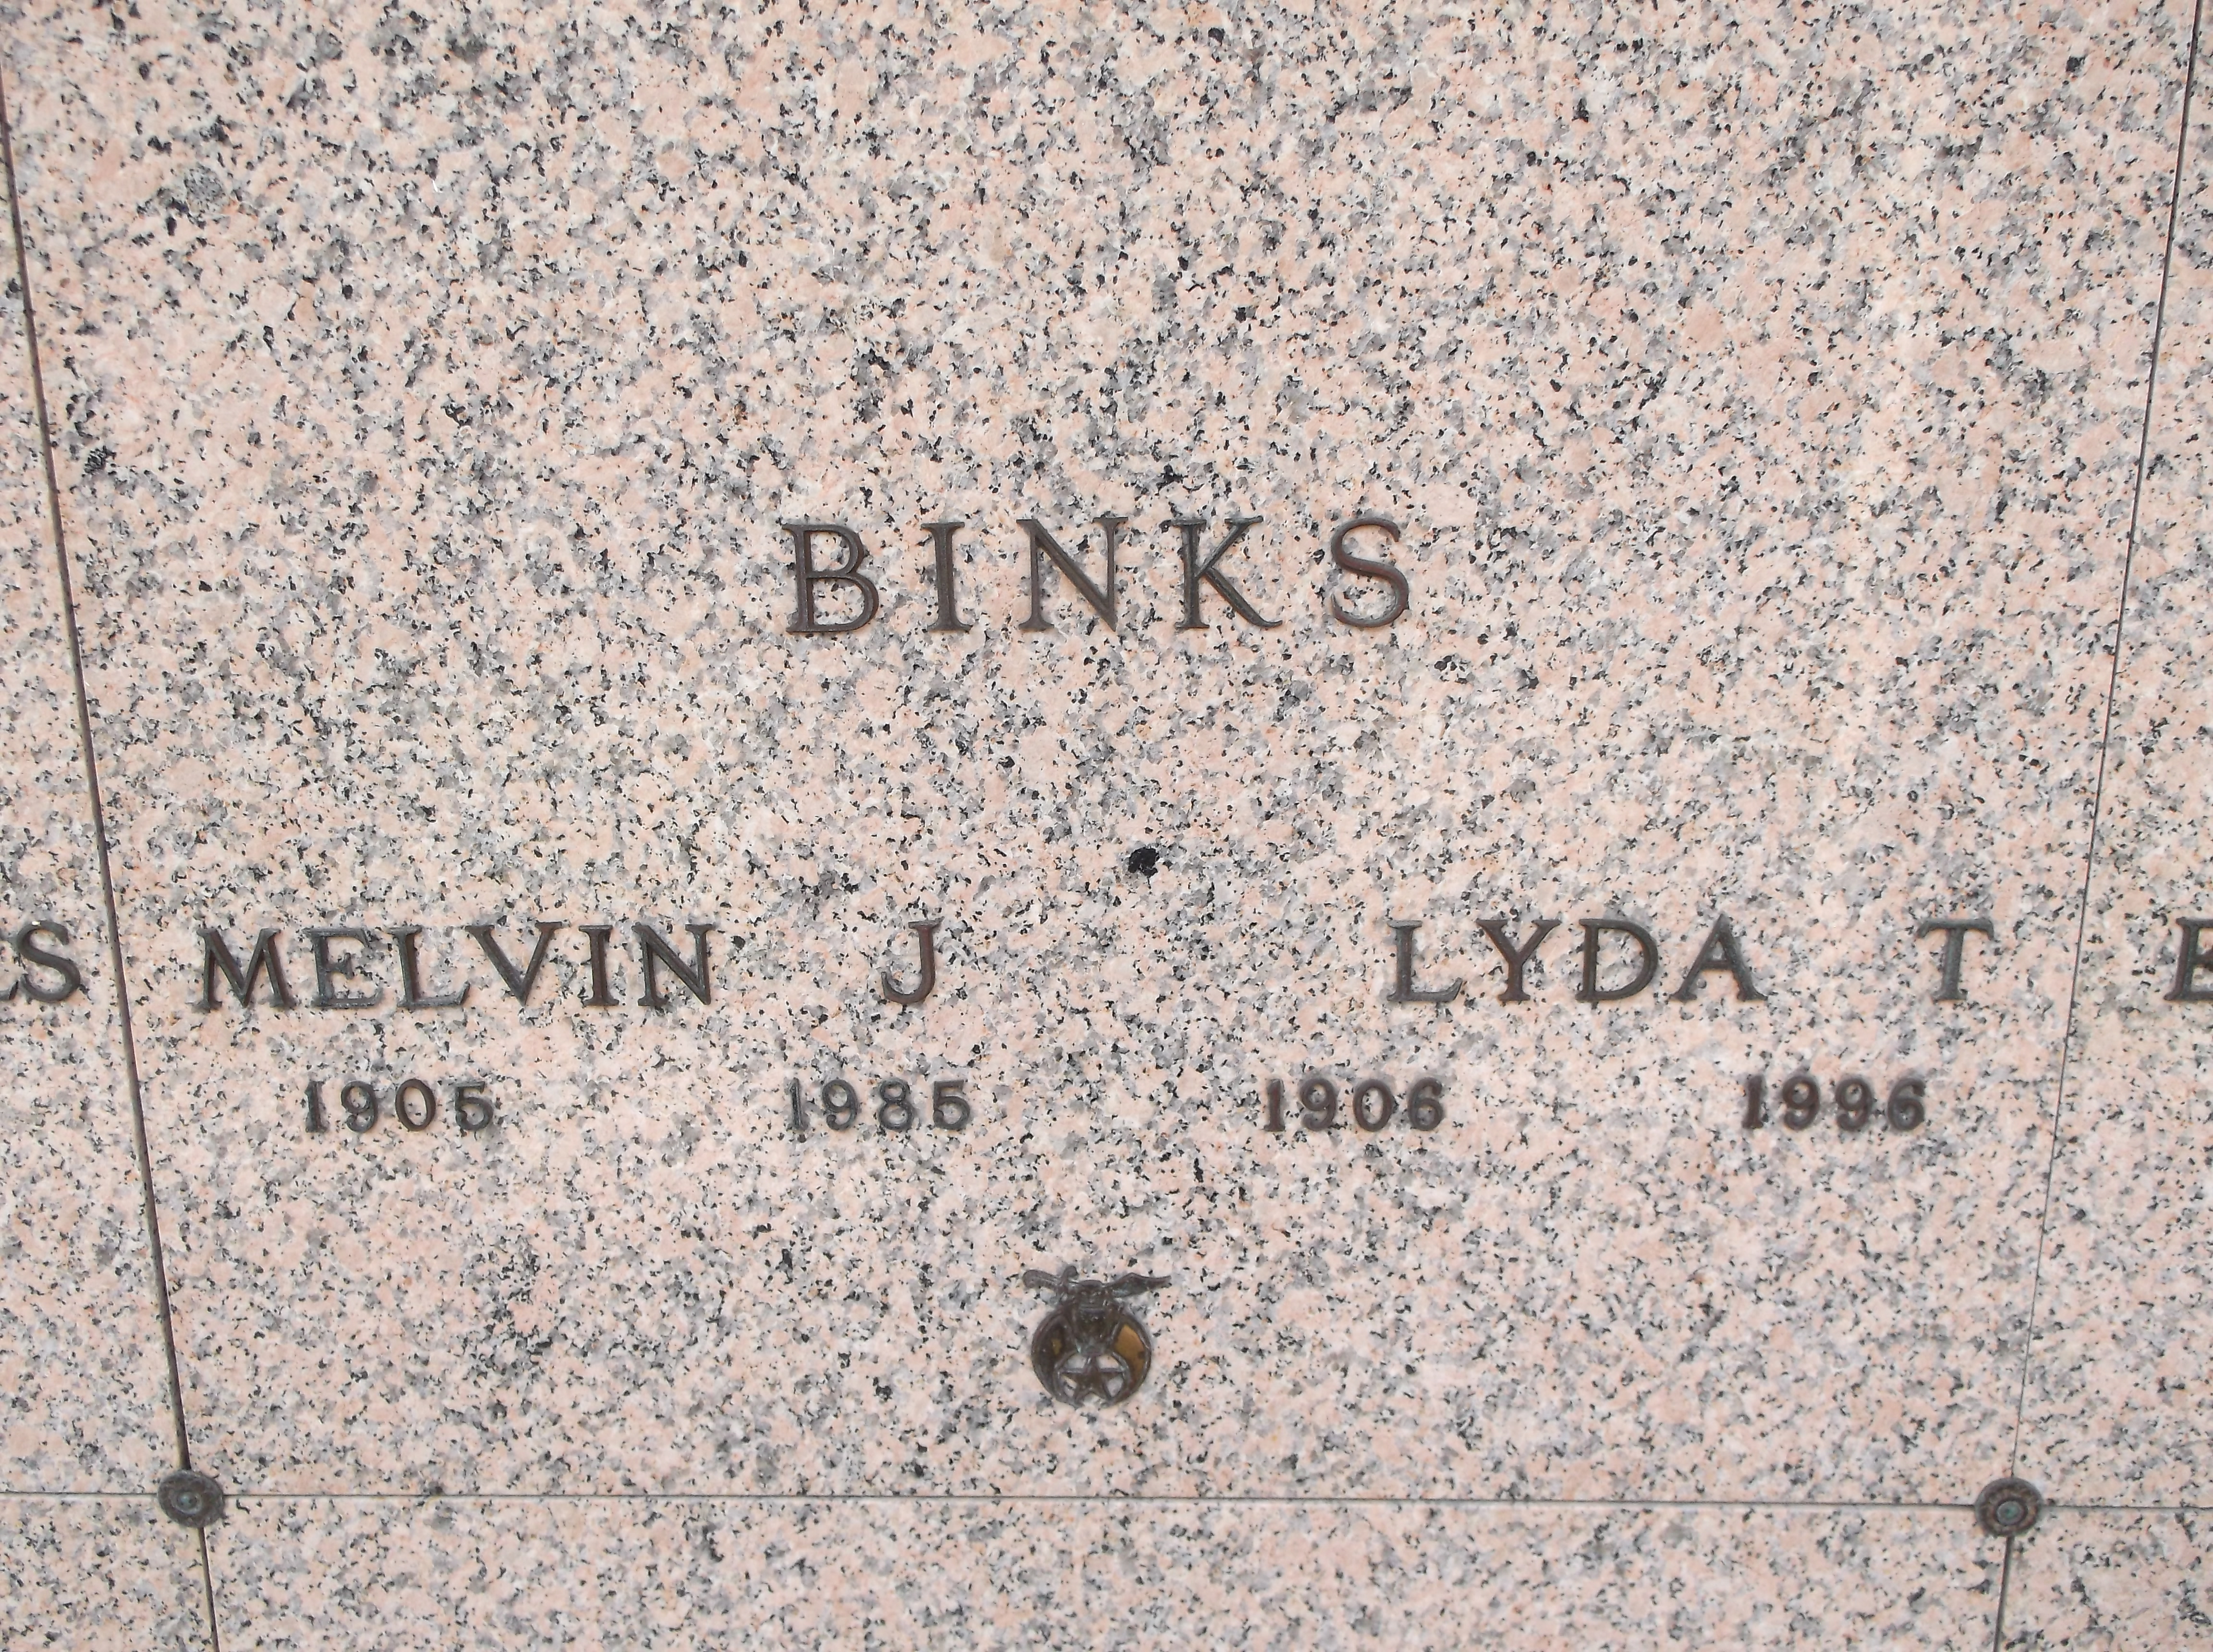 Melvin J Binks